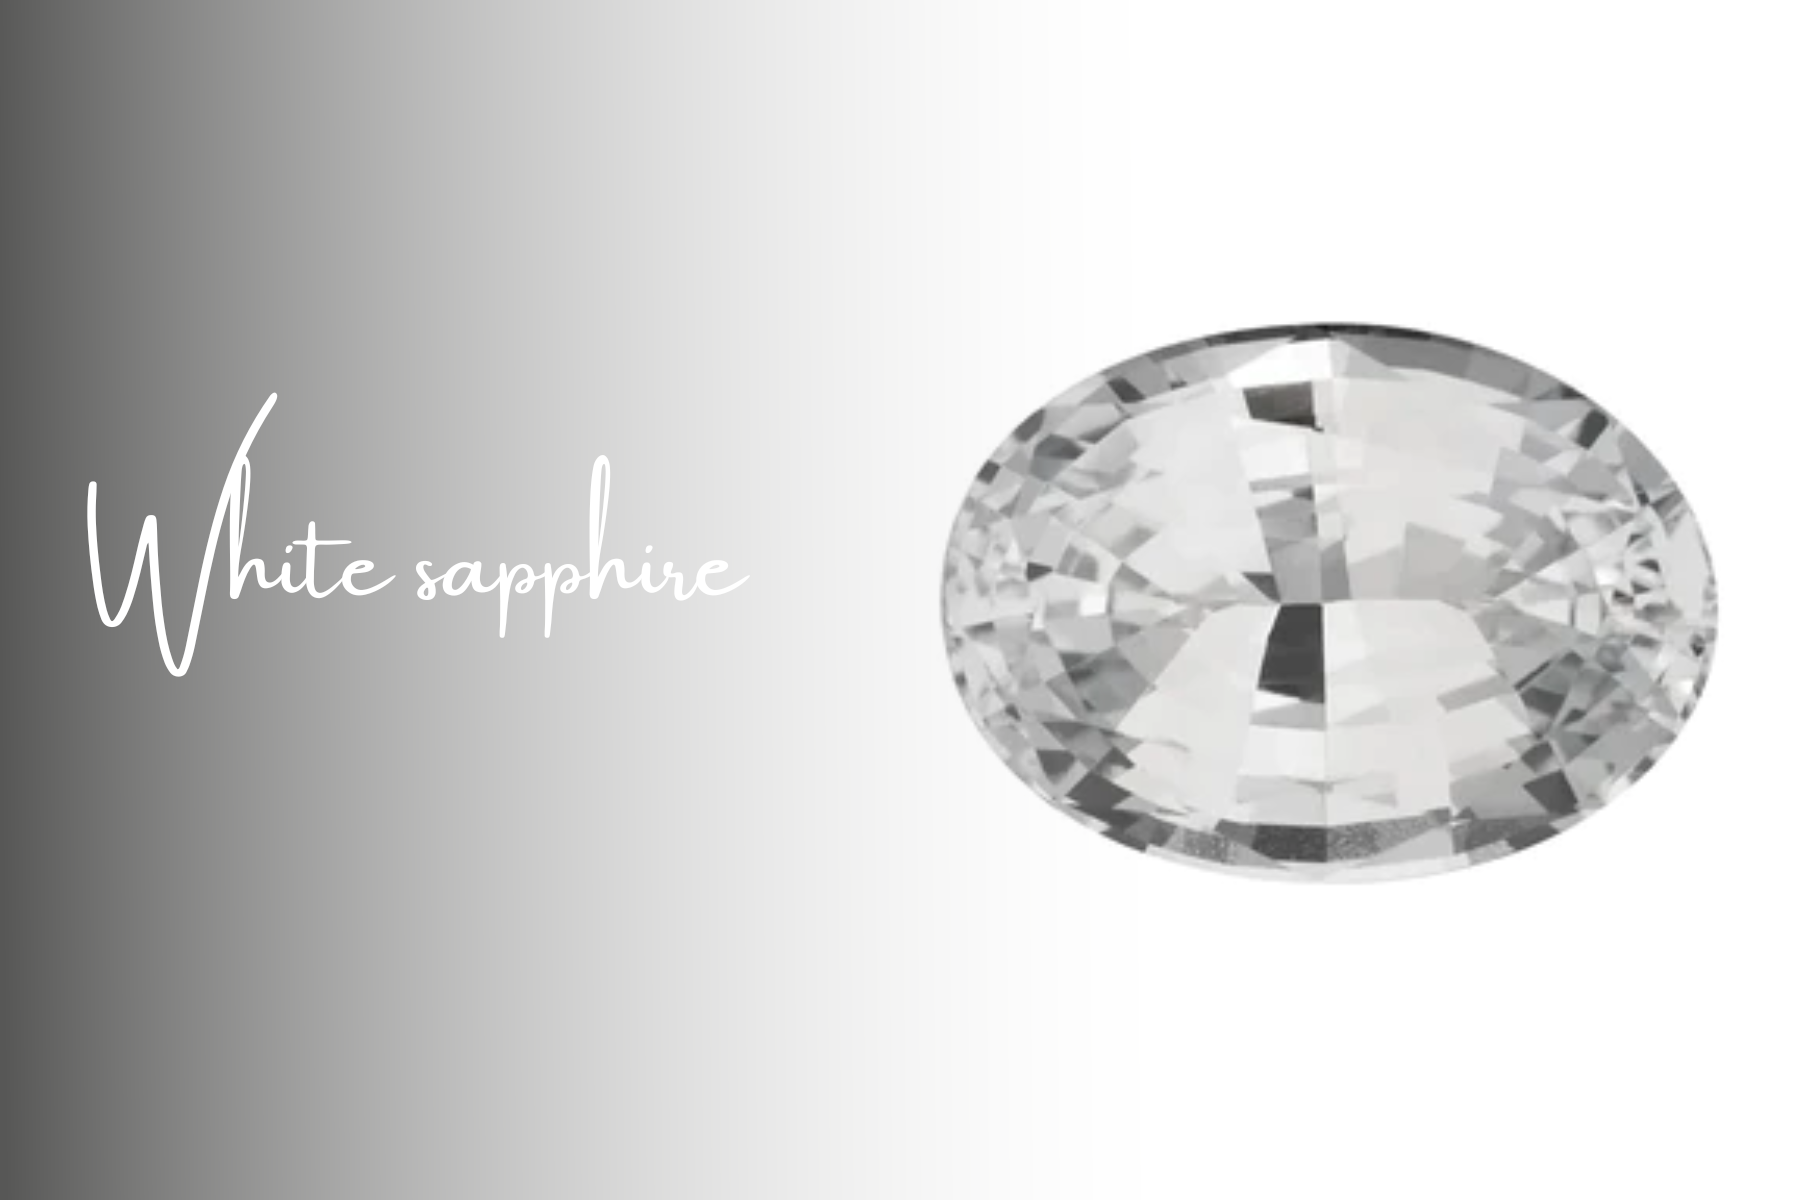 An oblong white sapphire